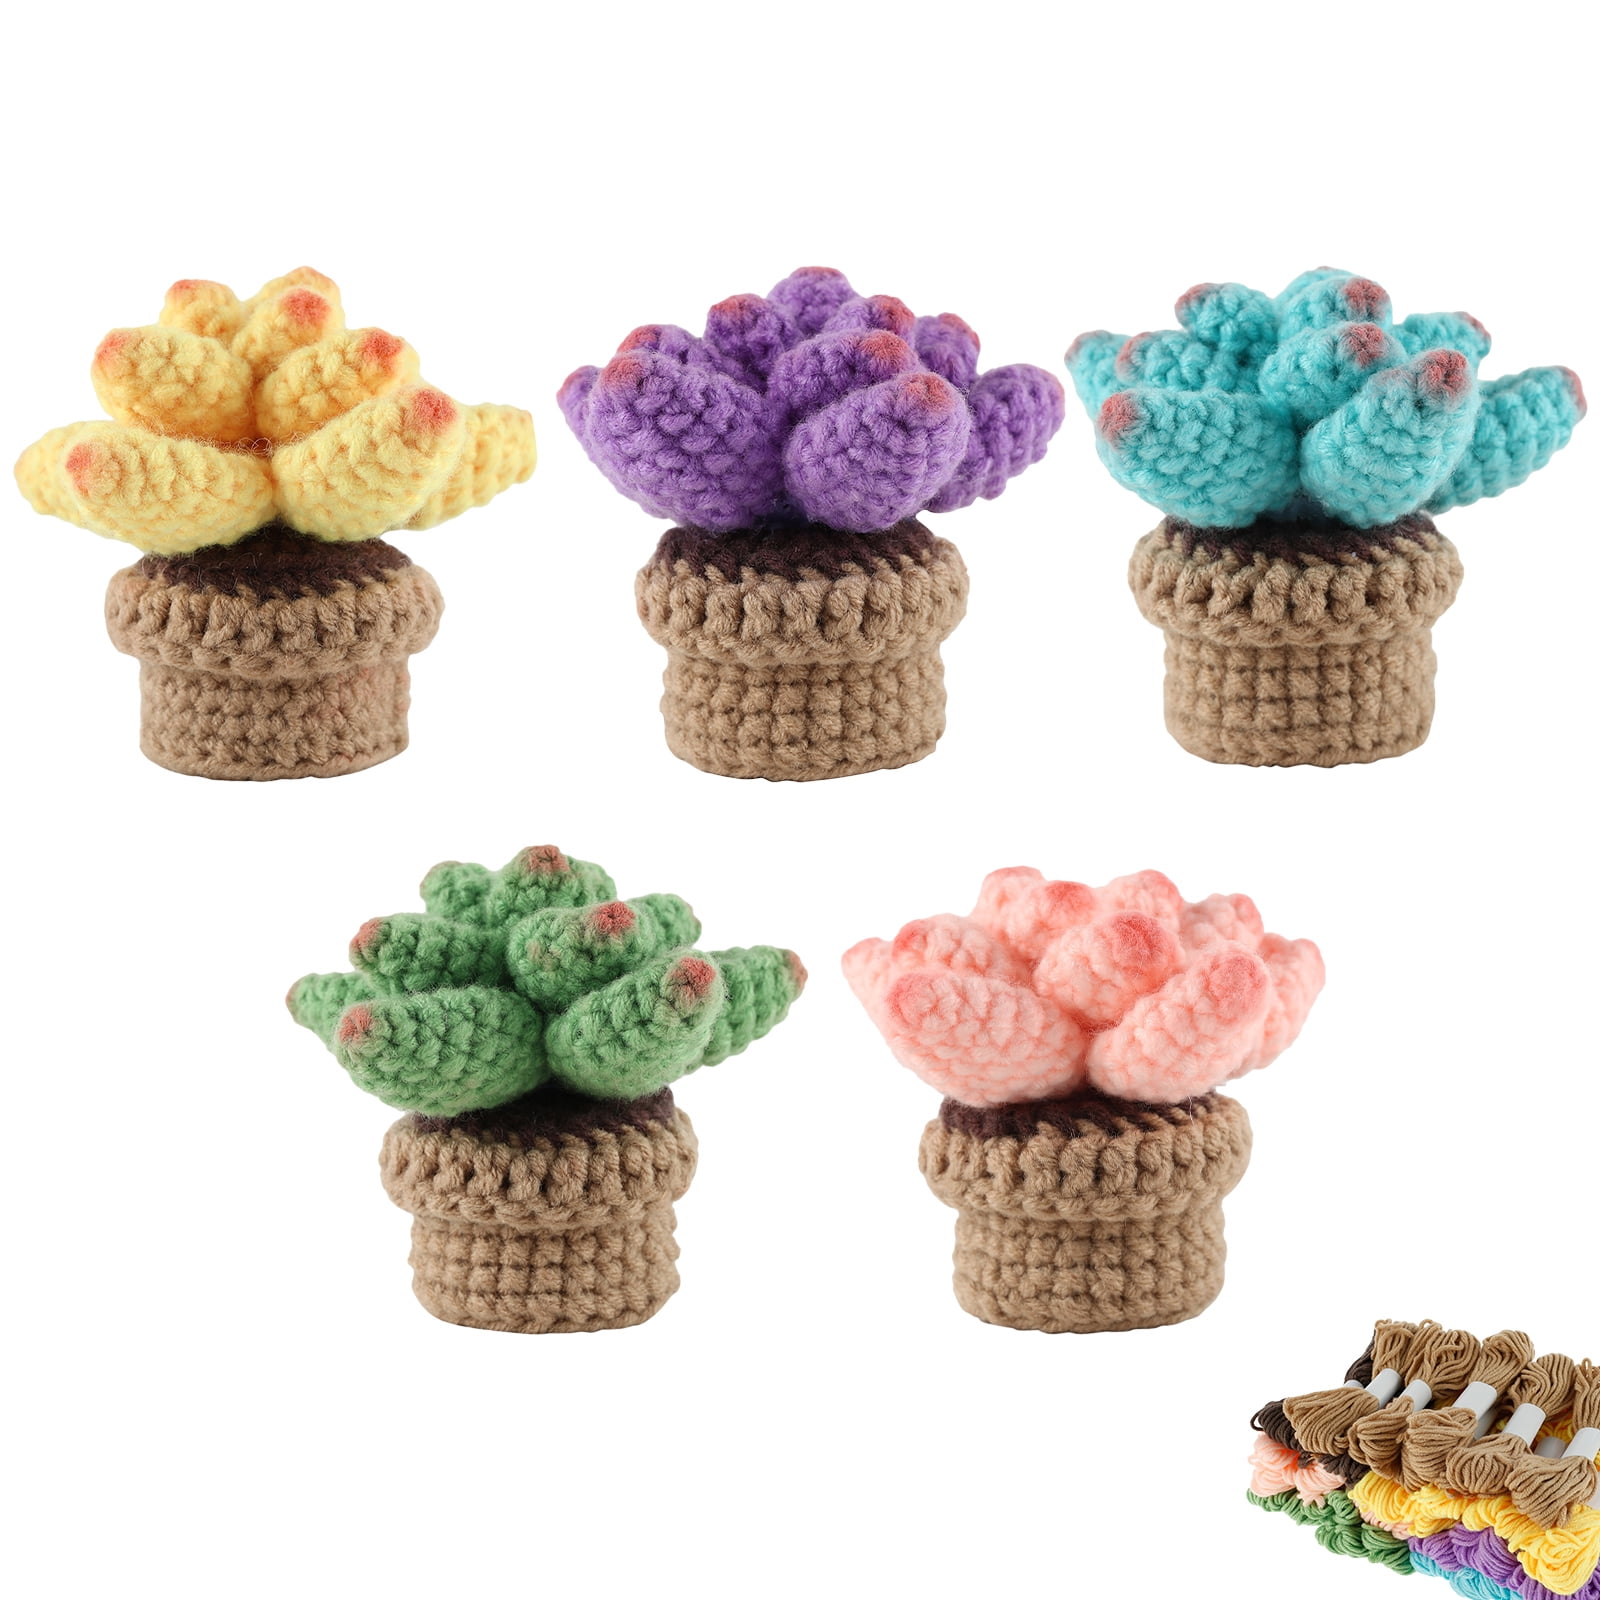 Crochet Beginner Kit Cactus Succulent Beginner Crochet Kit With Ergonomic  Crochet Hooks Step-by-Step Video Crochet Woobles Kit - AliExpress